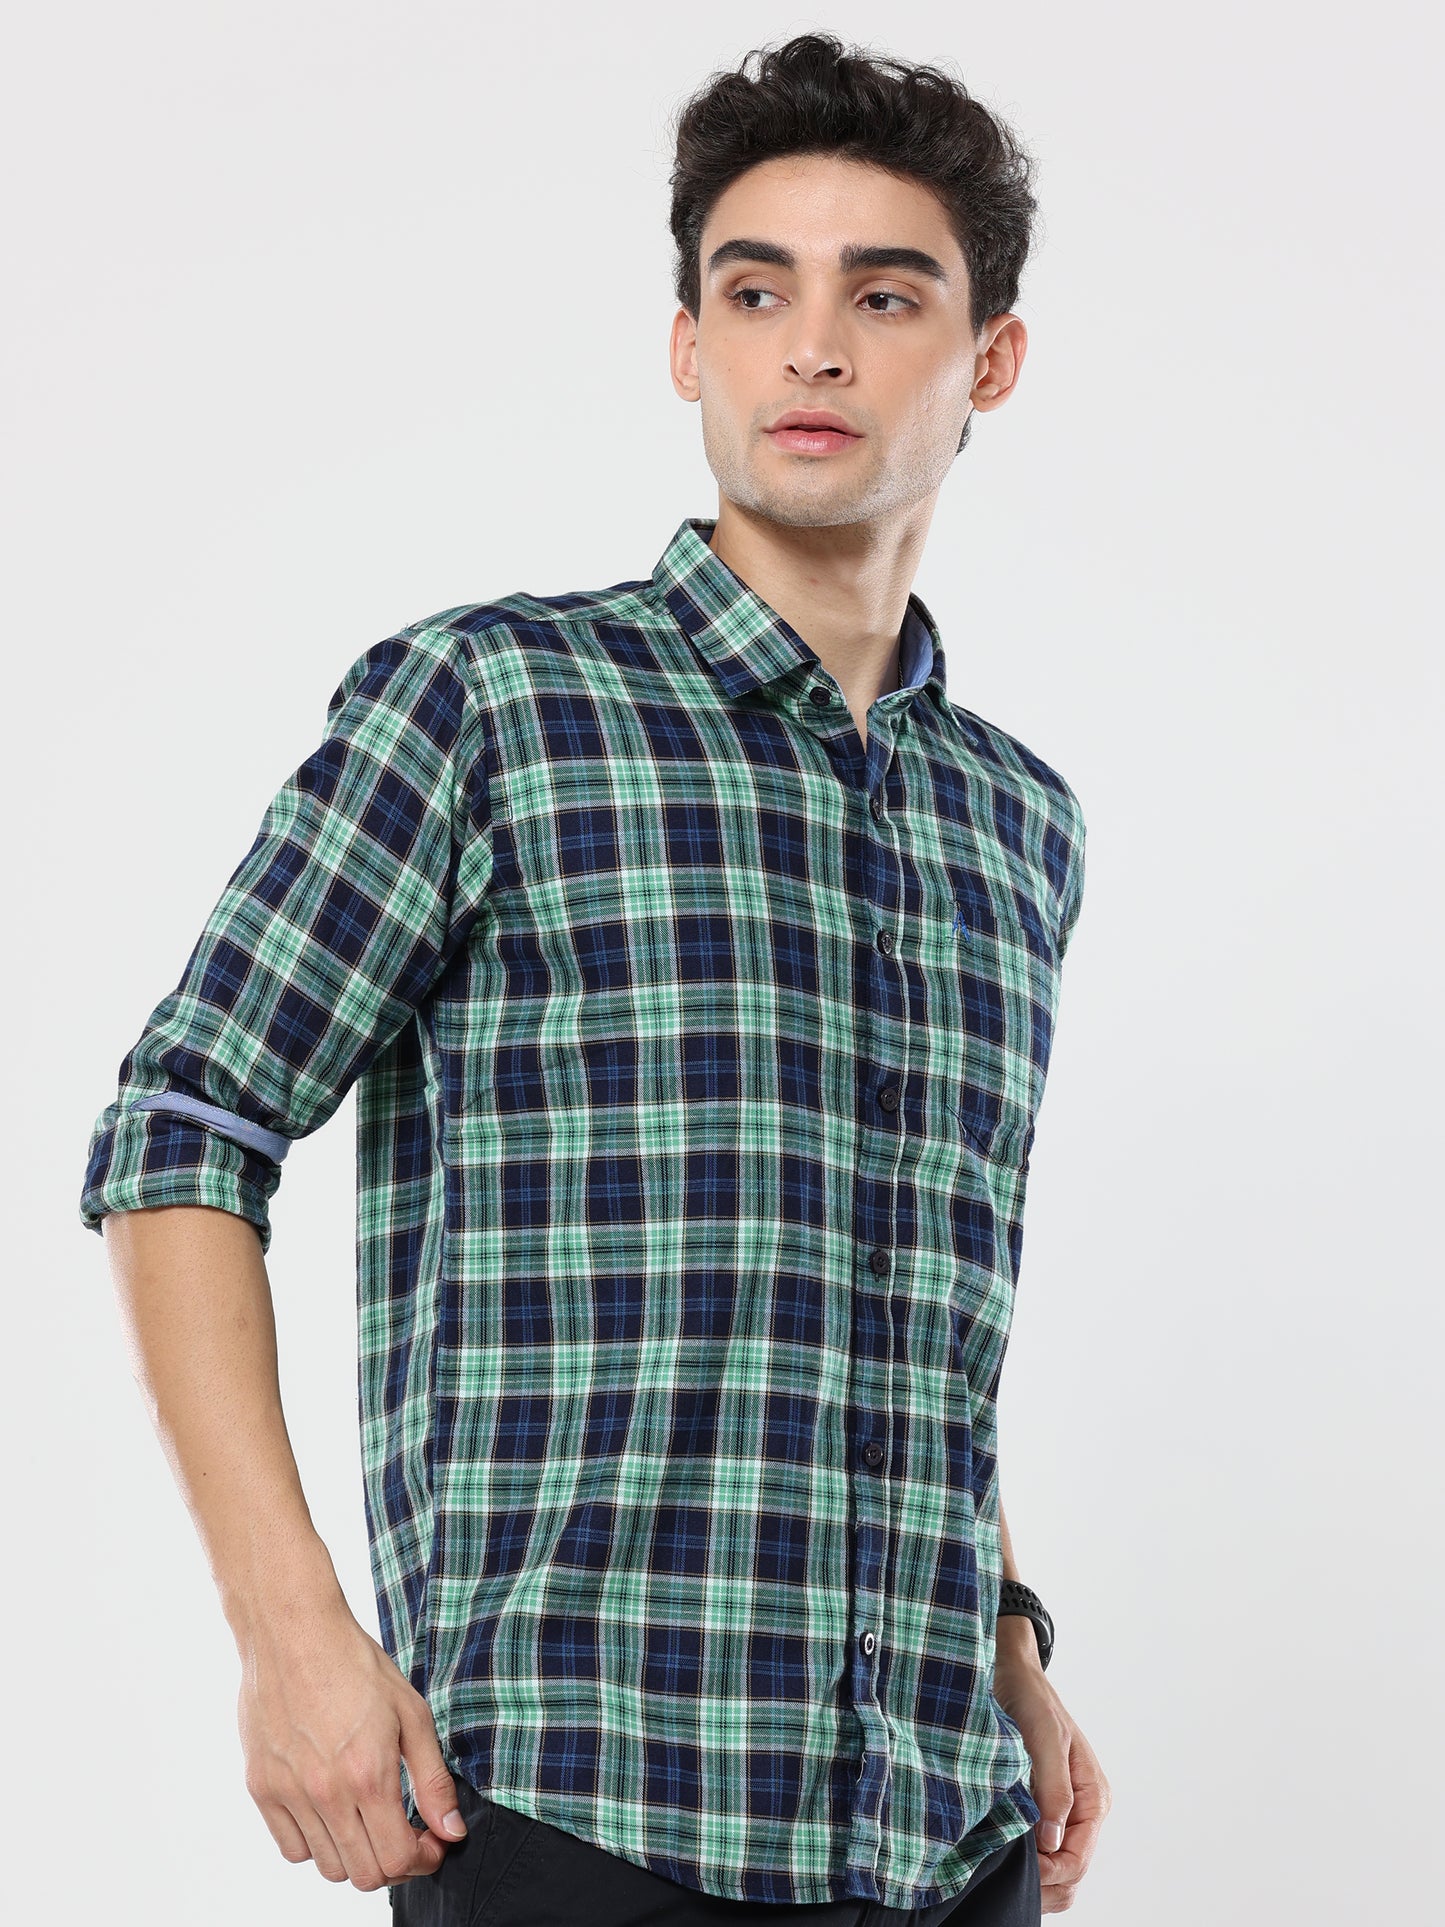 Green Blue plaid checks shirt for men